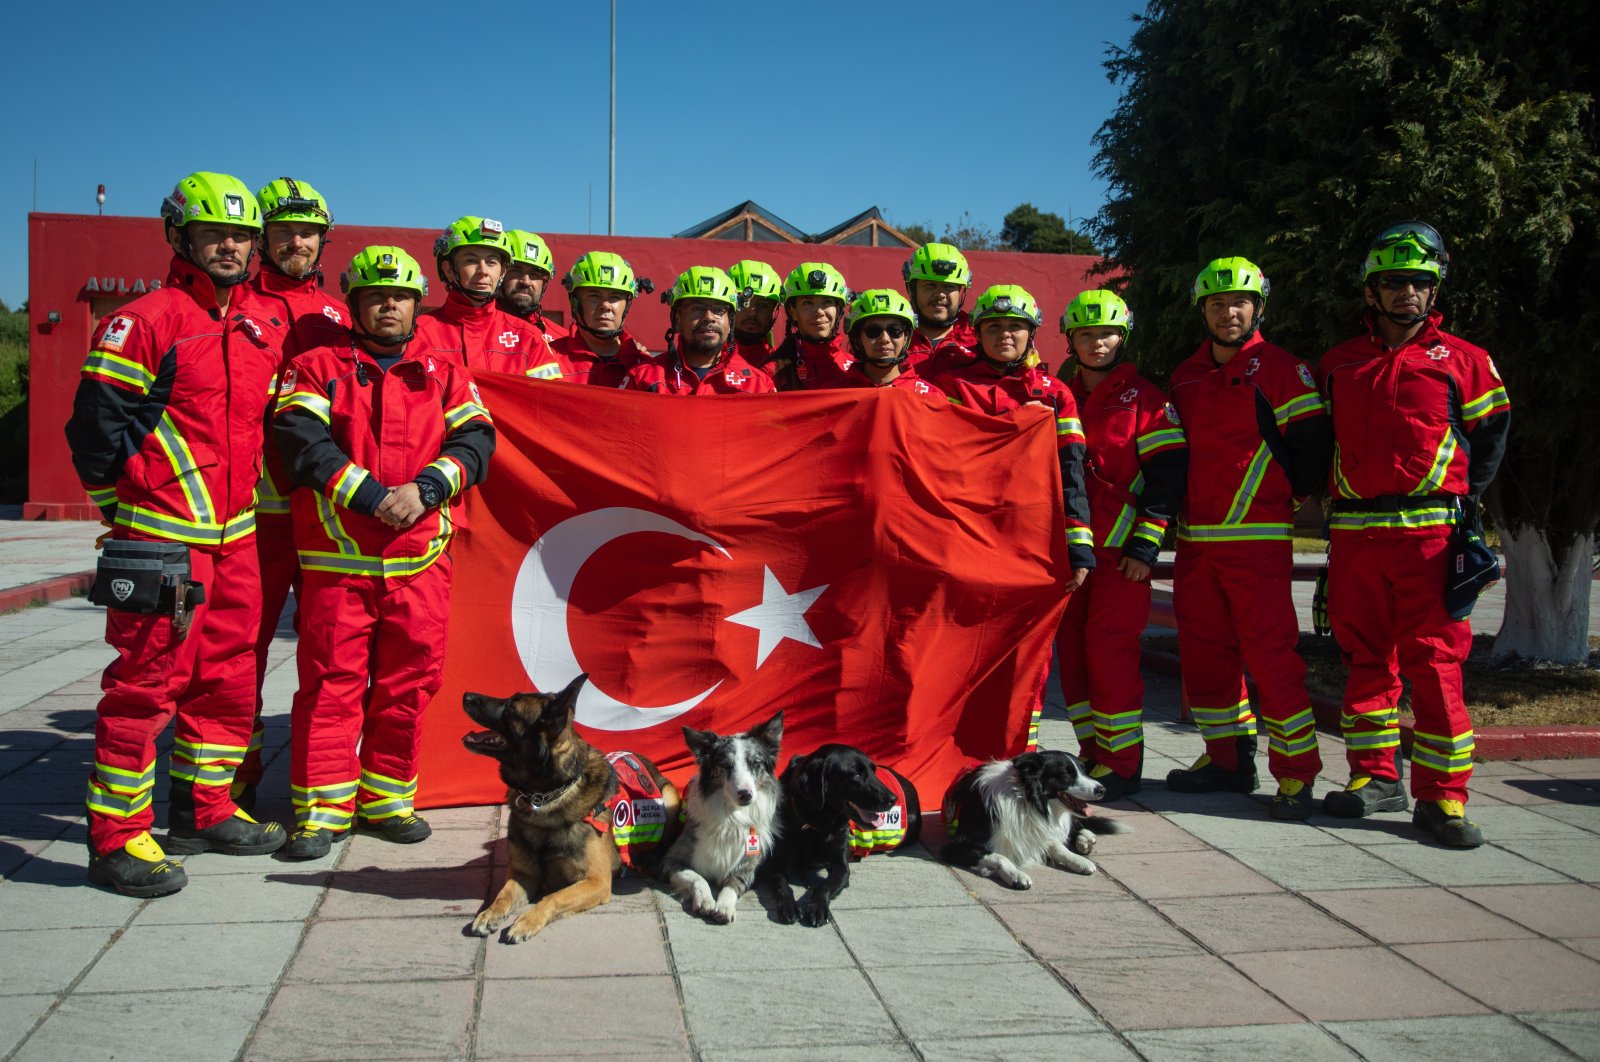 Gempa Türkiye: Semangat solidaritas harus terus berlanjut